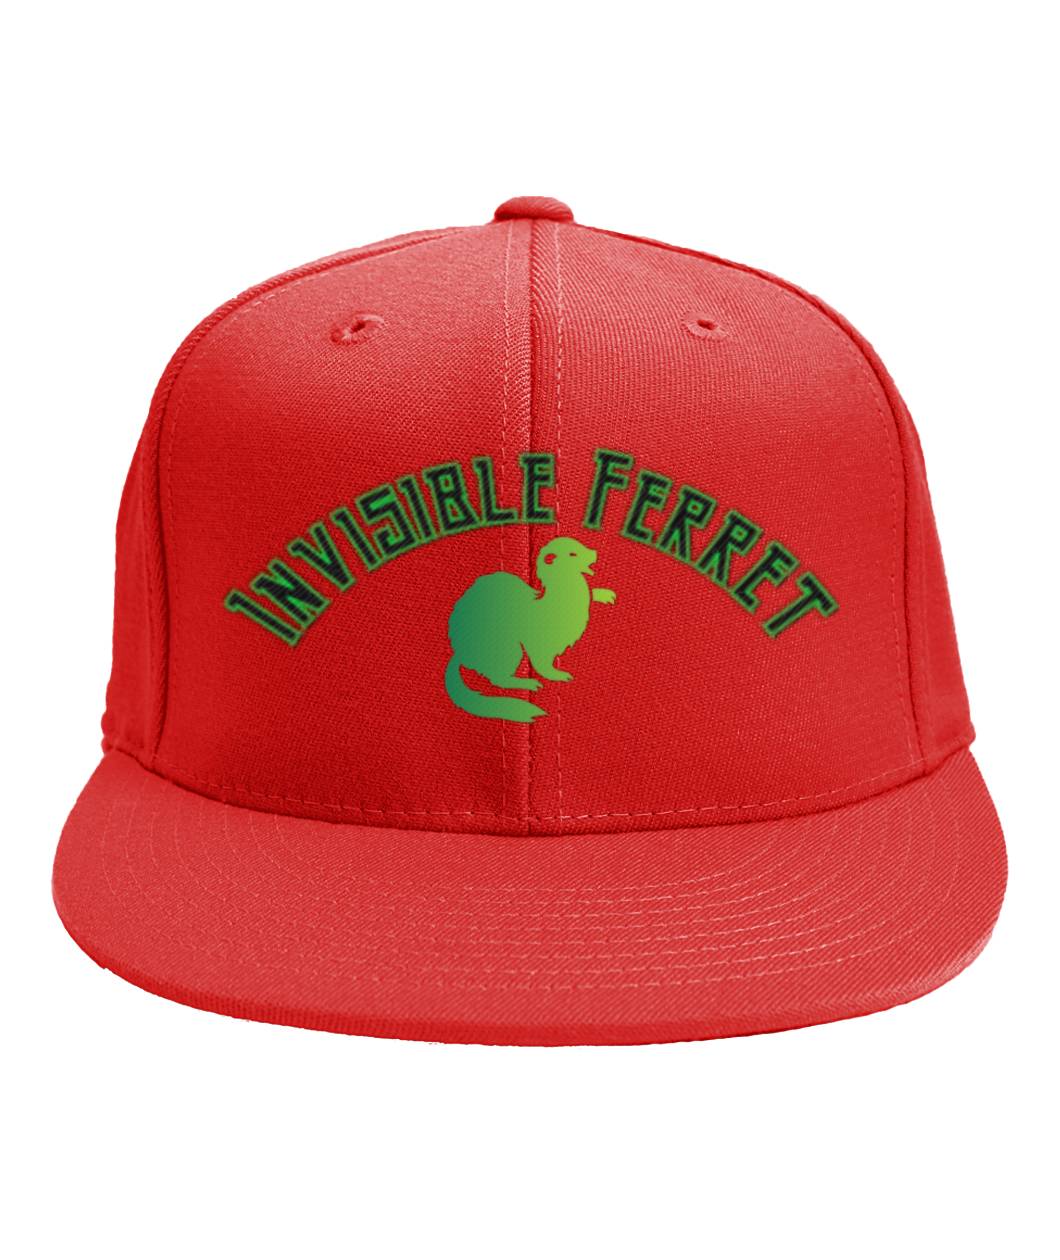 Invisible Ferret New Logo Cap